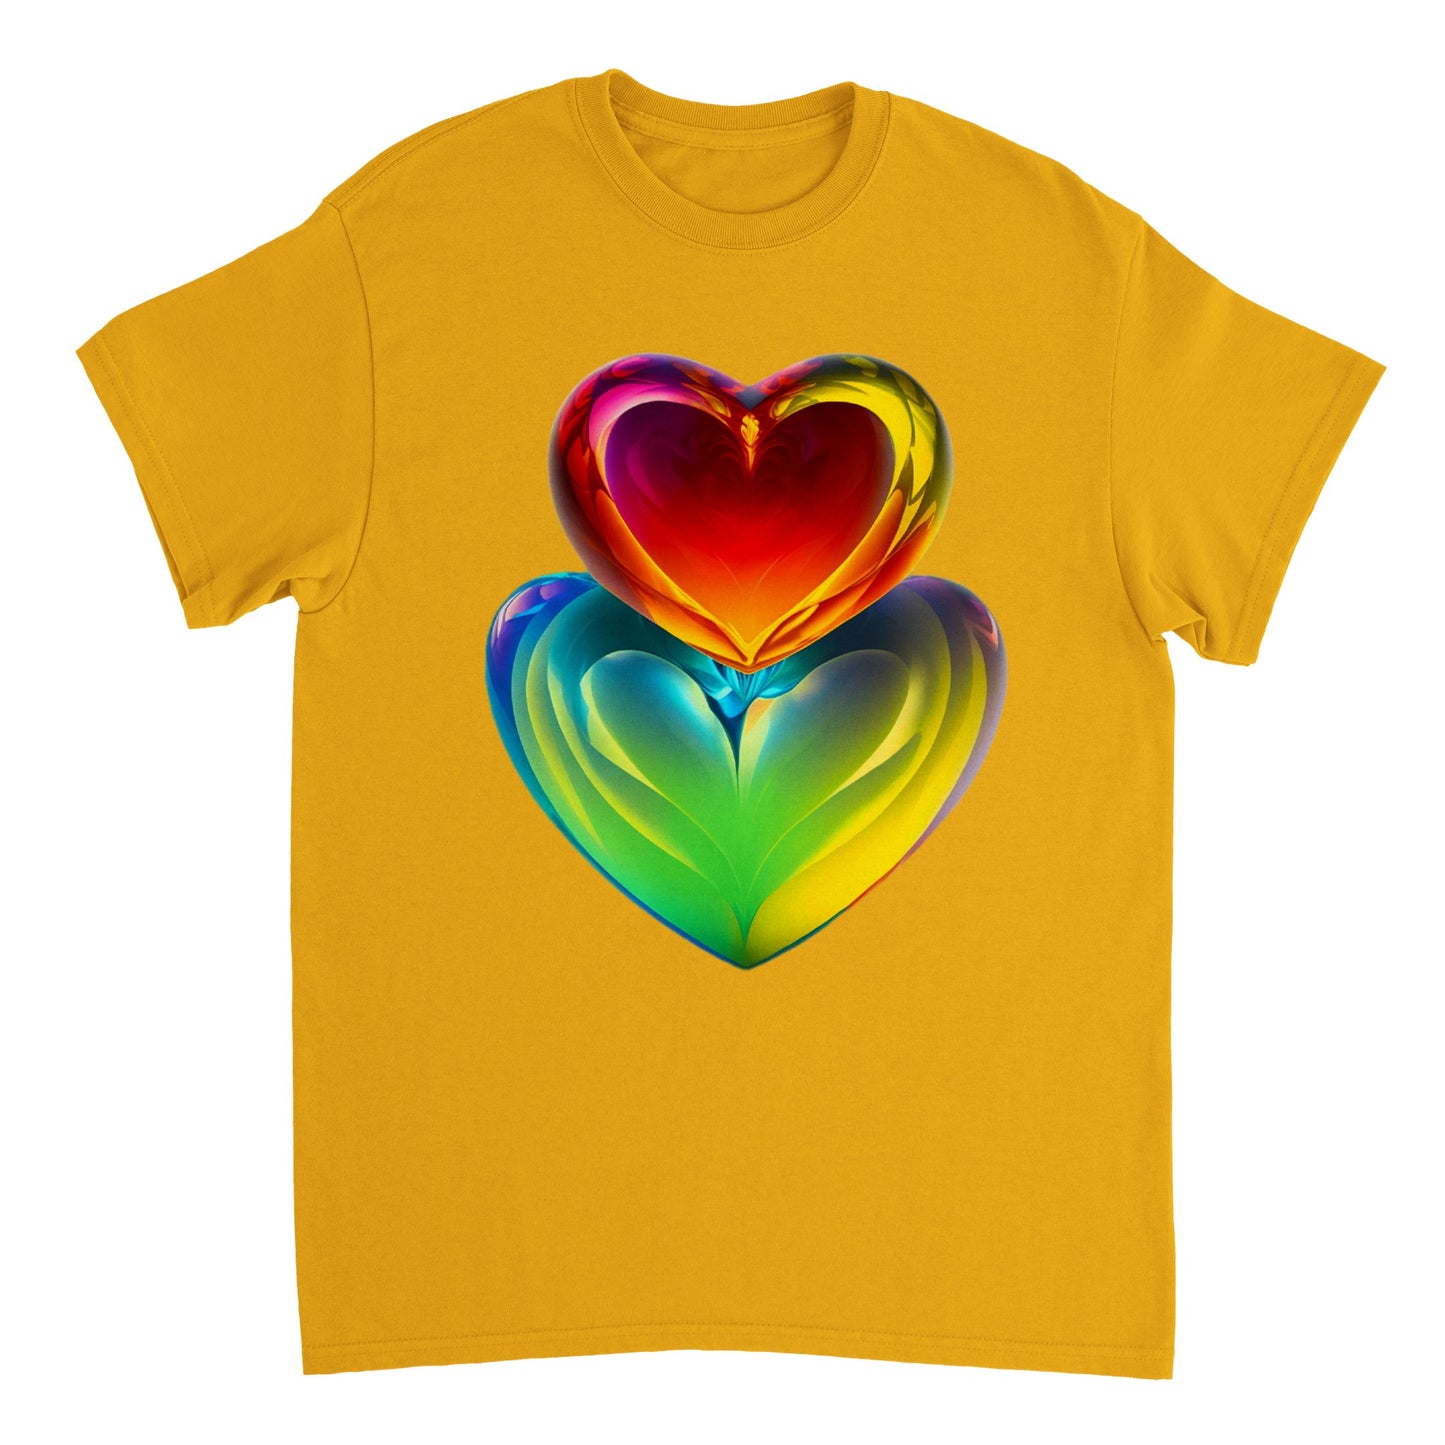 Love Heart - Heavyweight Unisex Crewneck T-shirt 108